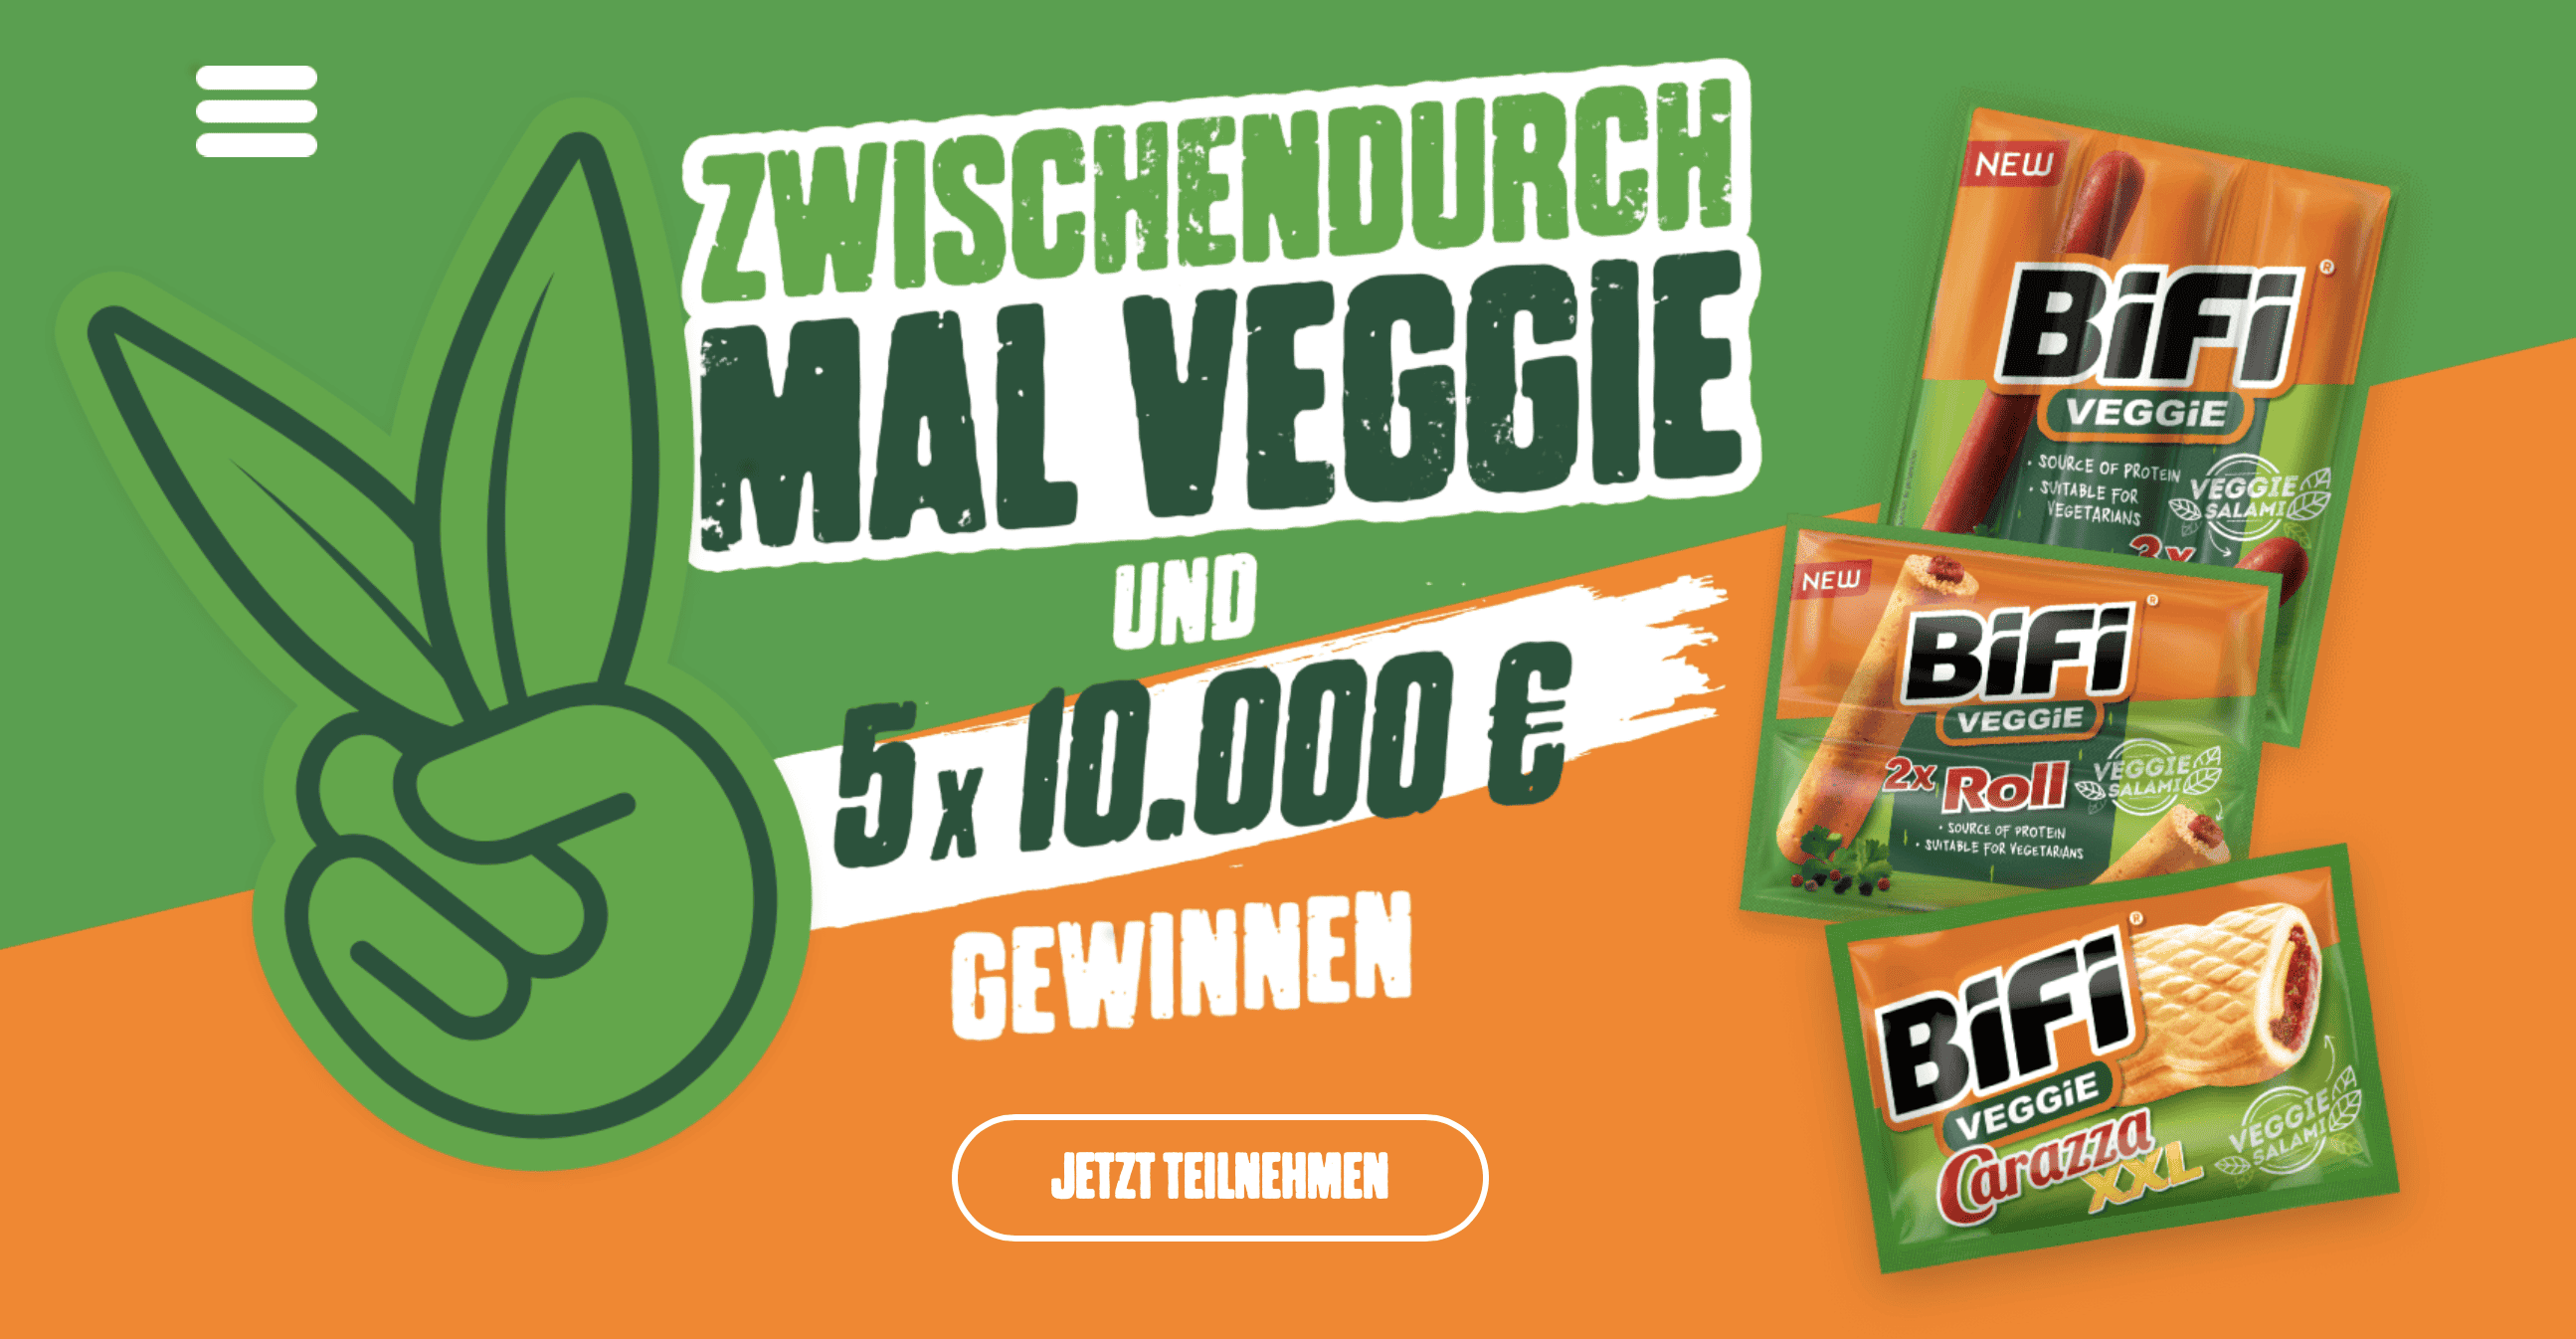 case_BiFi - AUF DEN VEGGIE-GESCHMACK KOMMEN & 5 x 10.000 € GEWINNEN! > zur Datenbank FMCG Food-Gewinnspiele